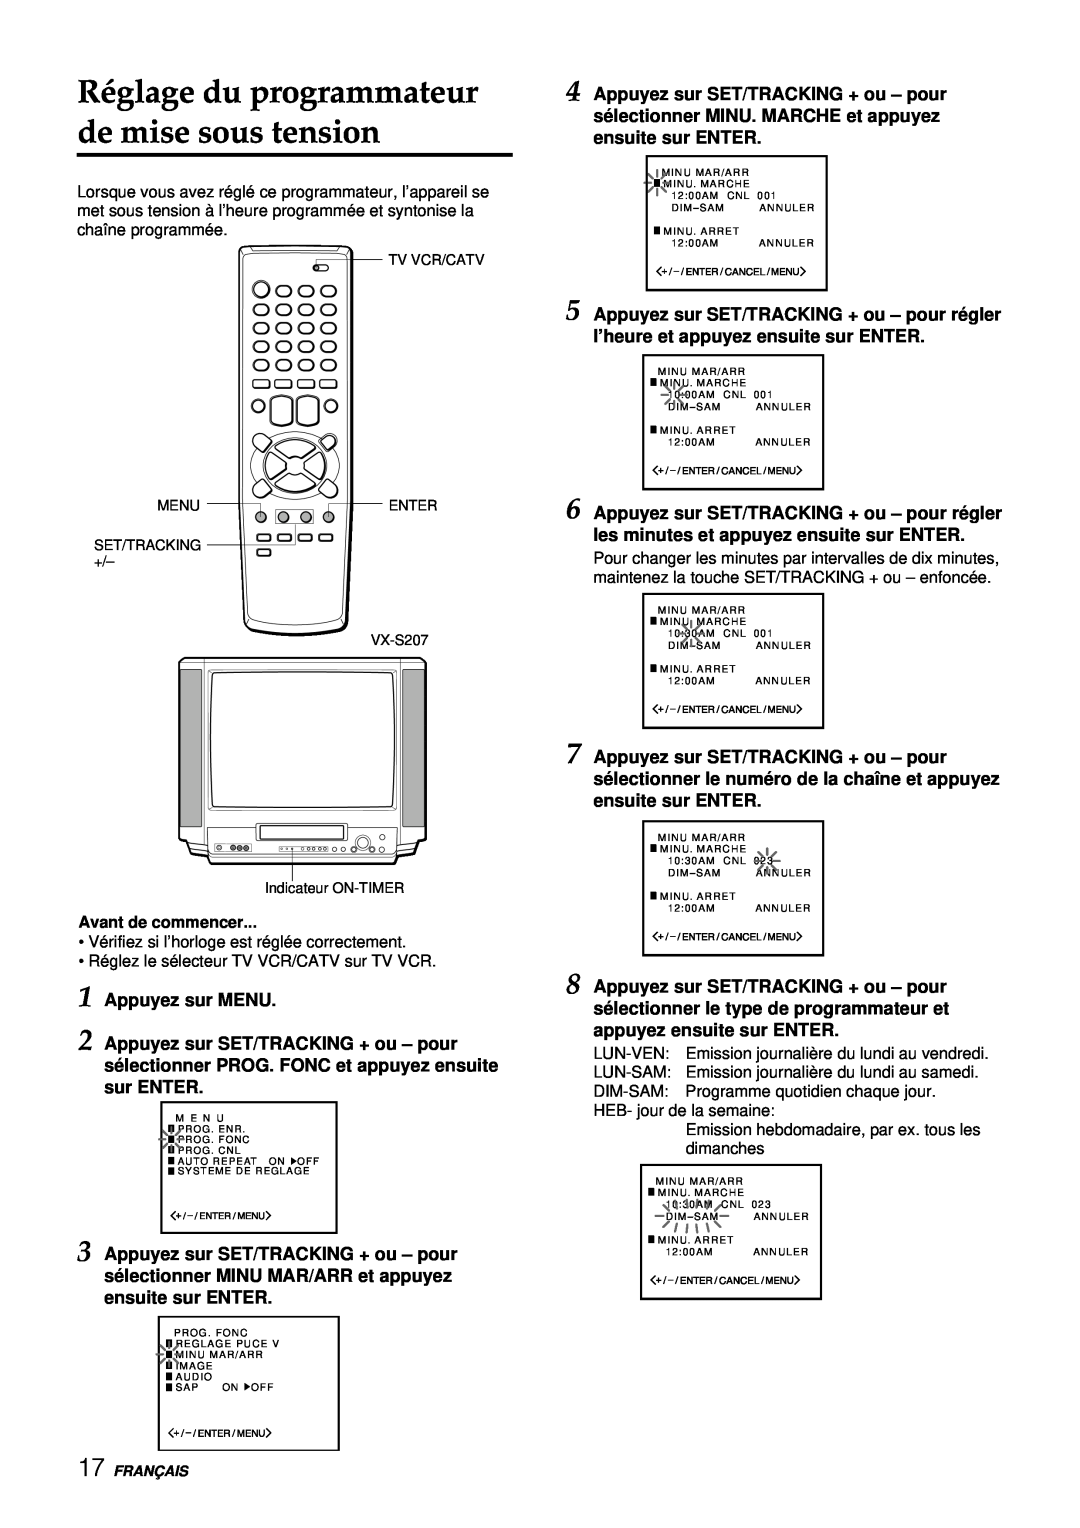 Aiwa VX-S137U manual Réglage du programmateur de mise sous tension, Appuyez sur MENU 2 Appuyez sur SET/TRACKING + ou - pour 